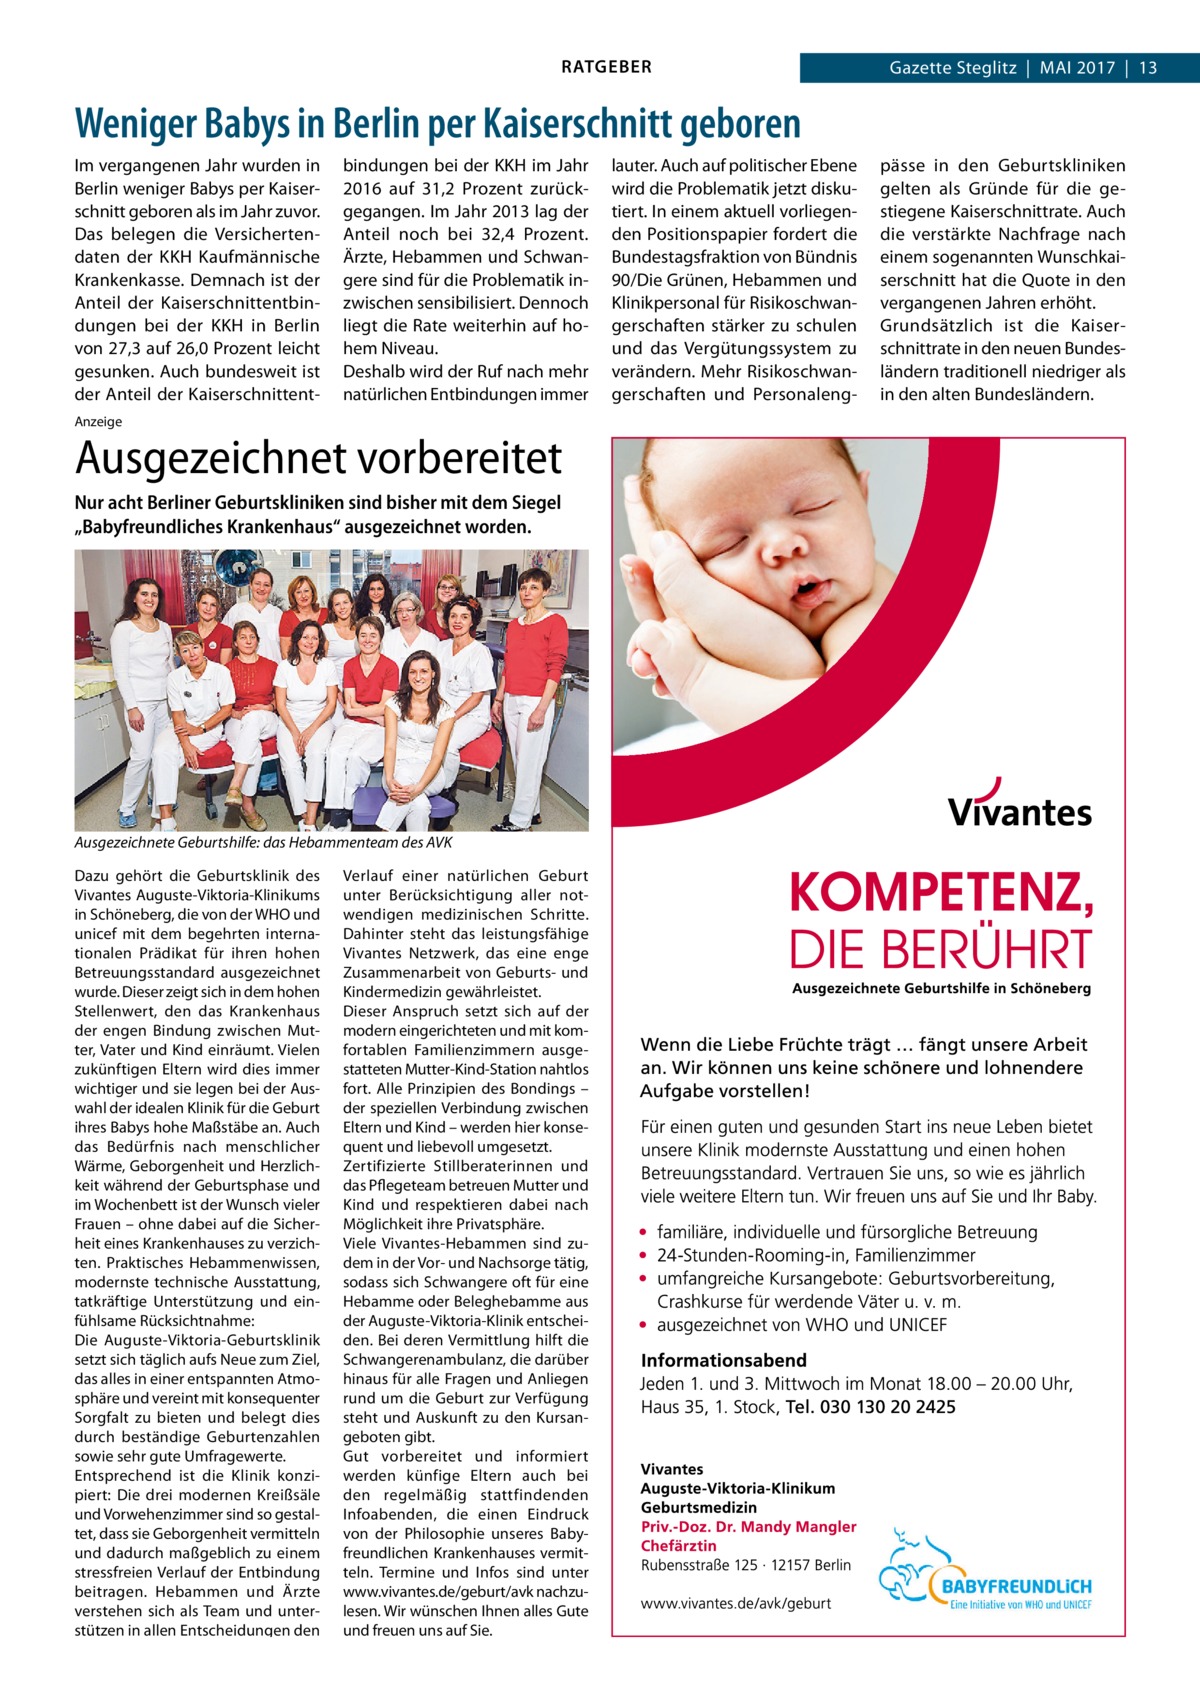 RATGEBER  Gazette Steglitz  |  Mai 2017  |  13  Weniger Babys in Berlin per Kaiserschnitt geboren Im vergangenen Jahr wurden in Berlin weniger Babys per Kaiserschnitt geboren als im Jahr zuvor. Das belegen die Versichertendaten der KKH Kaufmännische Krankenkasse. Demnach ist der Anteil der Kaiserschnittentbindungen bei der KKH in Berlin von 27,3 auf 26,0 Prozent leicht gesunken. Auch bundesweit ist der Anteil der Kaiserschnittent bindungen bei der KKH im Jahr 2016 auf 31,2  Prozent zurückgegangen. Im Jahr 2013 lag der Anteil noch bei 32,4  Prozent. Ärzte, Hebammen und Schwangere sind für die Problematik inzwischen sensibilisiert. Dennoch liegt die Rate weiterhin auf hohem Niveau. Deshalb wird der Ruf nach mehr natürlichen Entbindungen immer  Anzeige  Ausgezeichnet vorbereitet Nur acht Berliner Geburtskliniken sind bisher mit dem Siegel „Babyfreundliches Krankenhaus“ ausgezeichnet worden.  Ausgezeichnete Geburtshilfe: das Hebammenteam des AVK Dazu gehört die Geburtsklinik des Vivantes Auguste-Viktoria-Klinikums in Schöneberg, die von der WHO und unicef mit dem begehrten internationalen Prädikat für ihren hohen Betreuungsstandard ausgezeichnet wurde. Dieser zeigt sich in dem hohen Stellenwert, den das Krankenhaus der engen Bindung zwischen Mutter, Vater und Kind einräumt. Vielen zukünftigen Eltern wird dies immer wichtiger und sie legen bei der Auswahl der idealen Klinik für die Geburt ihres Babys hohe Maßstäbe an. Auch das Bedürfnis nach menschlicher Wärme, Geborgenheit und Herzlichkeit während der Geburtsphase und im Wochenbett ist der Wunsch vieler Frauen – ohne dabei auf die Sicherheit eines Krankenhauses zu verzichten. Praktisches Hebammenwissen, modernste technische Ausstattung, tatkräftige Unterstützung und einfühlsame Rücksichtnahme: Die Auguste-Viktoria-Geburtsklinik setzt sich täglich aufs Neue zum Ziel, das alles in einer entspannten Atmosphäre und vereint mit konsequenter Sorgfalt zu bieten und belegt dies durch beständige Geburtenzahlen sowie sehr gute Umfragewerte. Entsprechend ist die Klinik konzipiert: Die drei modernen Kreißsäle und Vorwehenzimmer sind so gestaltet, dass sie Geborgenheit vermitteln und dadurch maßgeblich zu einem stressfreien Verlauf der Entbindung beitragen. Hebammen und Ärzte verstehen sich als Team und unterstützen in allen Entscheidungen den  Verlauf einer natürlichen Geburt unter Berücksichtigung aller notwendigen medizinischen Schritte. Dahinter steht das leistungsfähige Vivantes Netzwerk, das eine enge Zusammenarbeit von Geburts- und Kindermedizin gewährleistet. Dieser Anspruch setzt sich auf der modern eingerichteten und mit komfortablen Familienzimmern ausgestatteten Mutter-Kind-Station nahtlos fort. Alle Prinzipien des Bondings – der speziellen Verbindung zwischen Eltern und Kind – werden hier konsequent und liebevoll umgesetzt. Zertifizierte Stillberaterinnen und das Pflegeteam betreuen Mutter und Kind und respektieren dabei nach Möglichkeit ihre Privatsphäre. Viele Vivantes-Hebammen sind zudem in der Vor- und Nachsorge tätig, sodass sich Schwangere oft für eine Hebamme oder Beleghebamme aus der Auguste-Viktoria-Klinik entscheiden. Bei deren Vermittlung hilft die Schwangerenambulanz, die darüber hinaus für alle Fragen und Anliegen rund um die Geburt zur Verfügung steht und Auskunft zu den Kursangeboten gibt. Gut vorbereitet und informiert werden künfige Eltern auch bei den regelmäßig stattfindenden Infoabenden, die einen Eindruck von der Philosophie unseres Babyfreundlichen Krankenhauses vermitteln. Termine und Infos sind unter www.vivantes.de/geburt/avk nachzulesen. Wir wünschen Ihnen alles Gute und freuen uns auf Sie.  lauter. Auch auf politischer Ebene wird die Problematik jetzt diskutiert. In einem aktuell vorliegenden Positionspapier fordert die Bundestagsfraktion von Bündnis 90/Die Grünen, Hebammen und Klinikpersonal für Risikoschwangerschaften stärker zu schulen und das Vergütungssystem zu verändern. Mehr Risikoschwangerschaften und Personaleng pässe in den Geburtskliniken gelten als Gründe für die gestiegene Kaiserschnittrate. Auch die verstärkte Nachfrage nach einem sogenannten Wunschkaiserschnitt hat die Quote in den vergangenen Jahren erhöht. Grundsätzlich ist die Kaiserschnittrate in den neuen Bundesländern traditionell niedriger als in den alten Bundesländern.